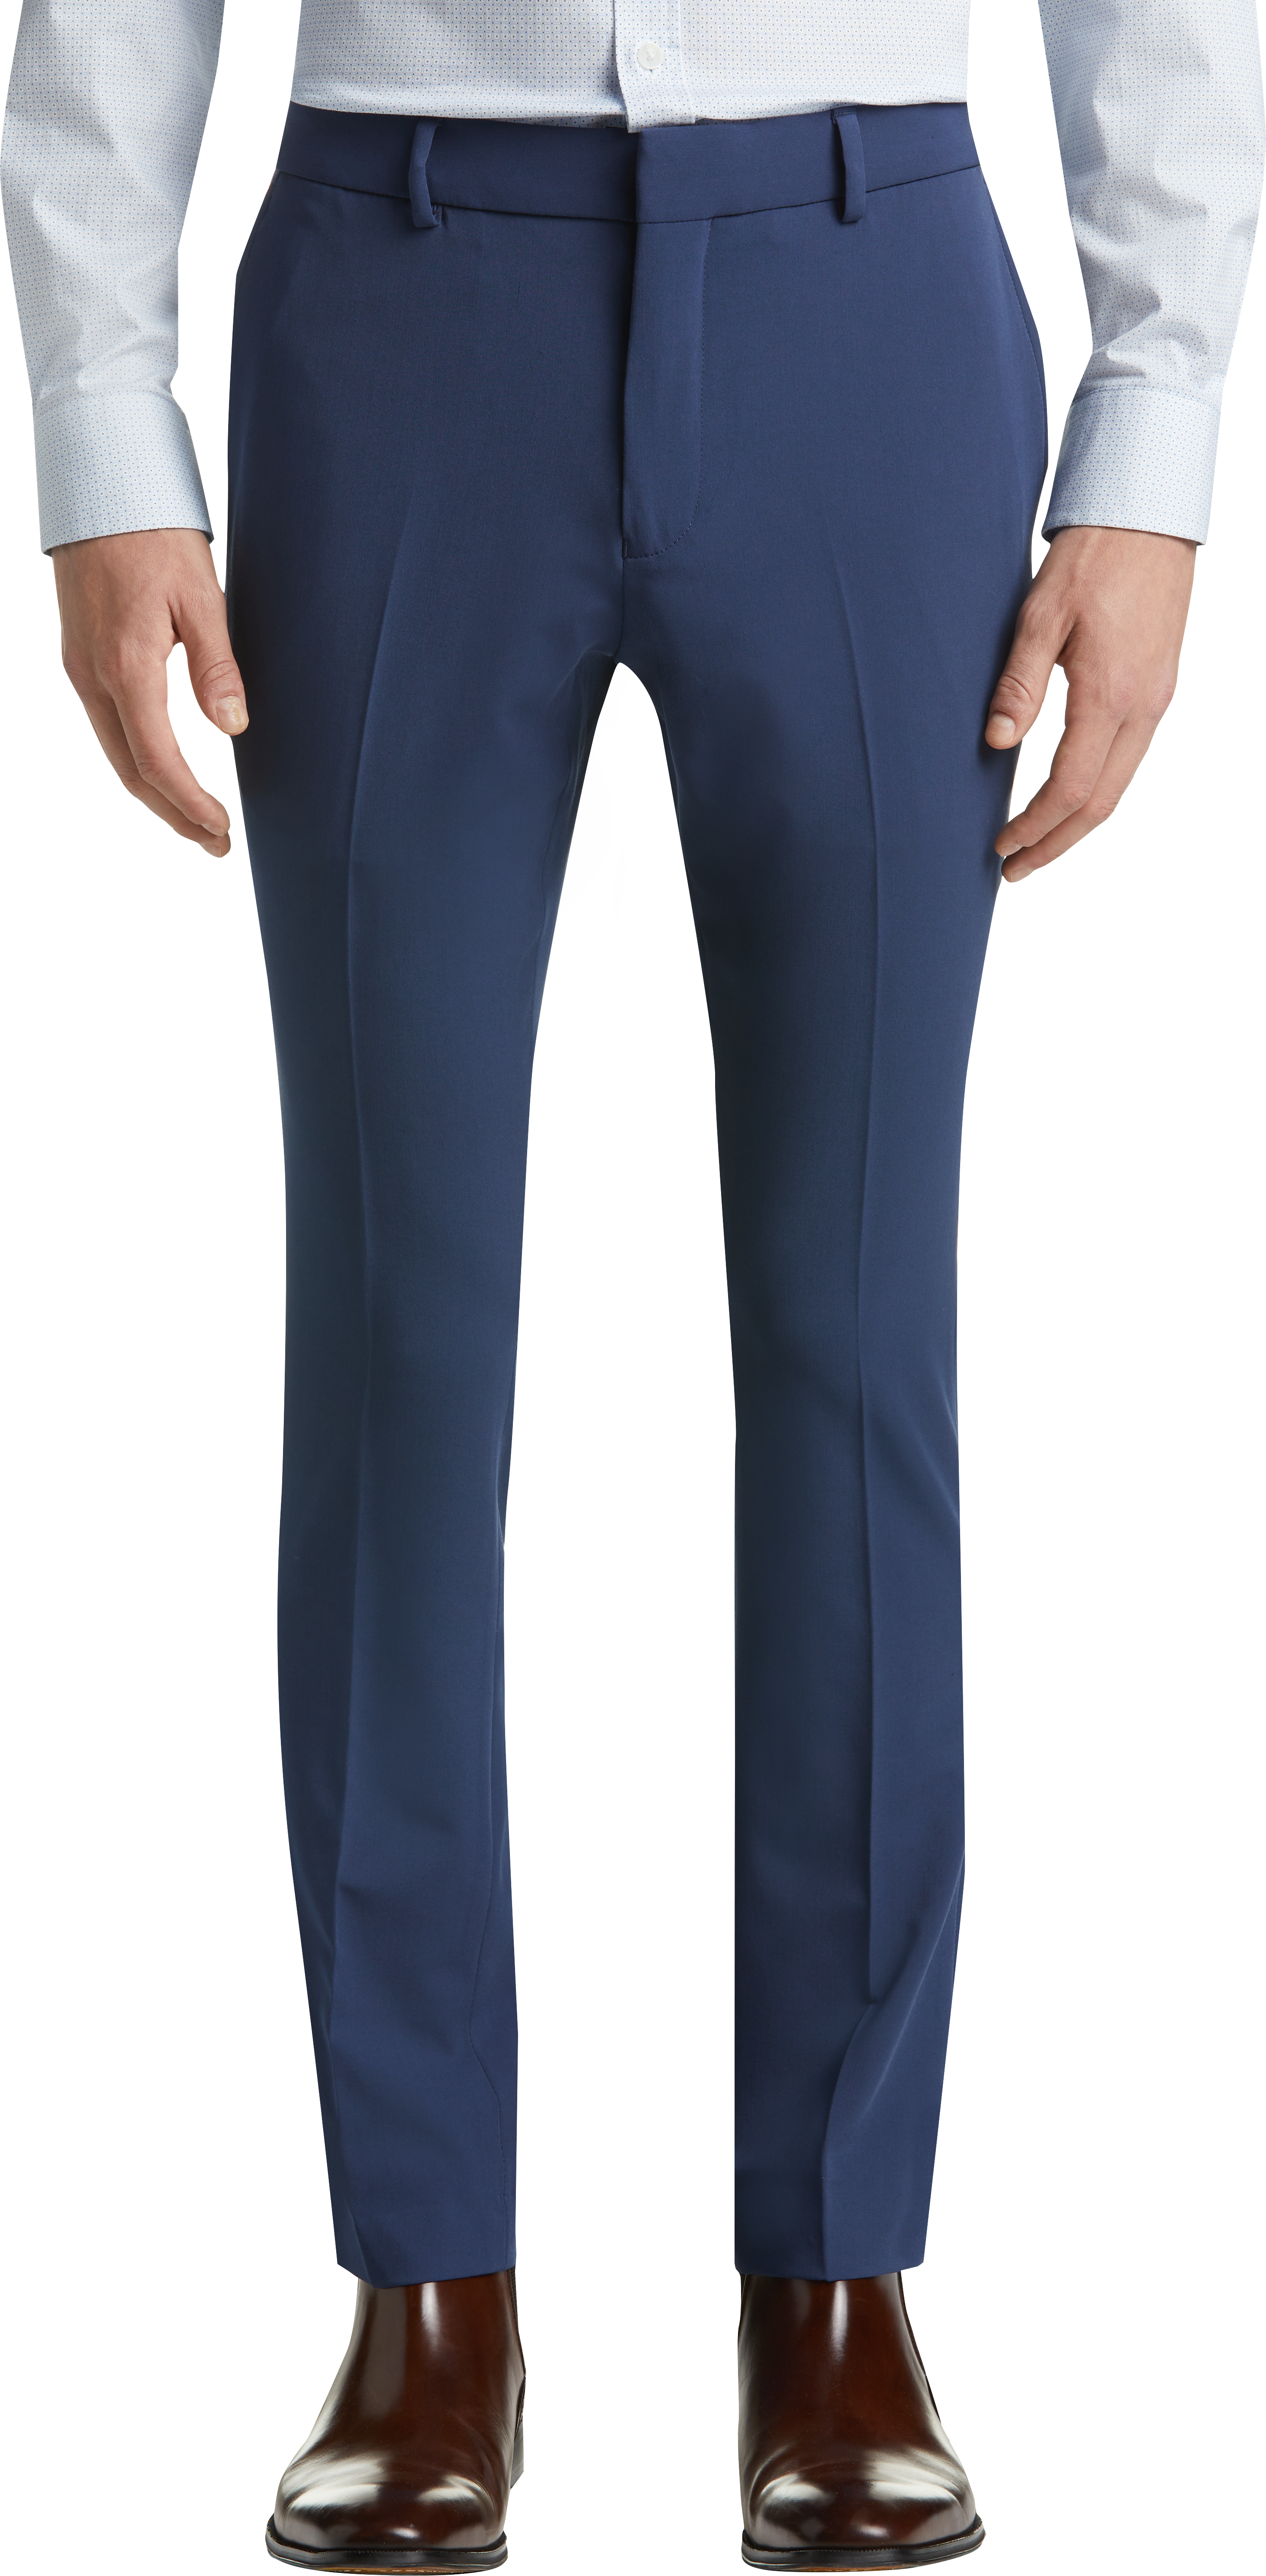 Egara Blue Extreme Slim Fit Dress Pants - Men's Sale | Men's Wearhouse